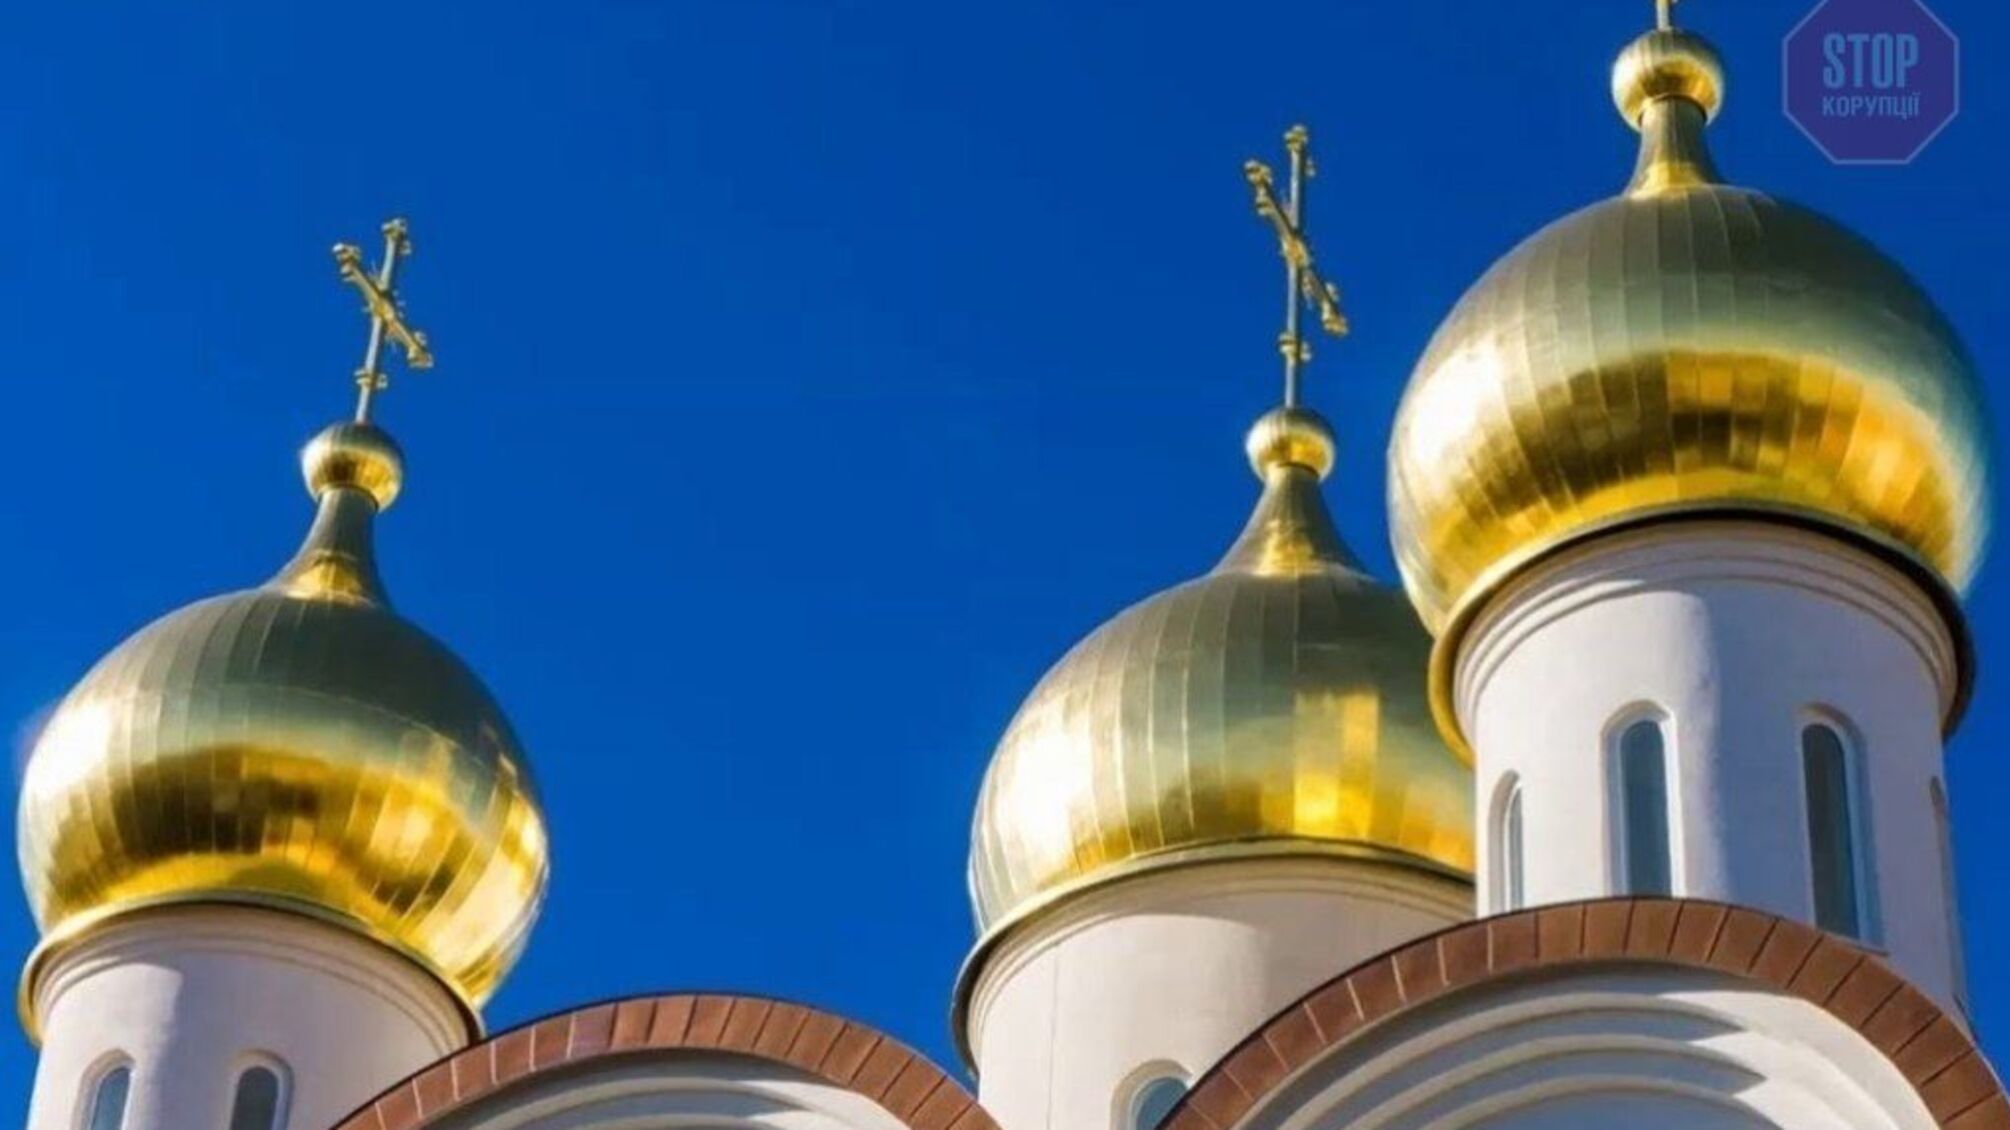 4 березня в усіх православних церквах Київщини відбудеться молебен за мир